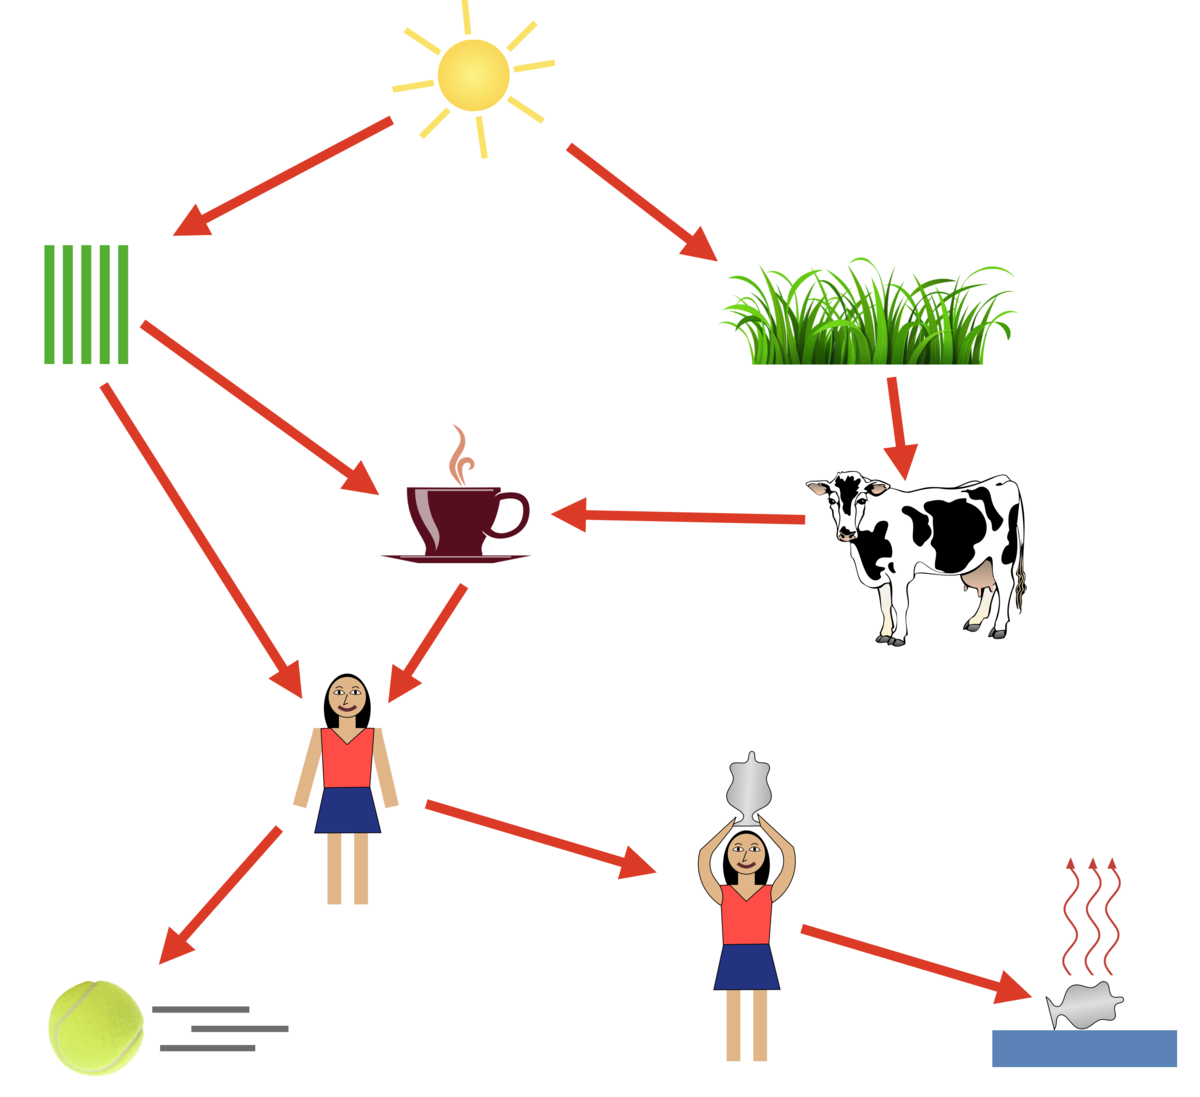 Tegning som illustrerer energinettet som er beskrevet i artikkelteksten